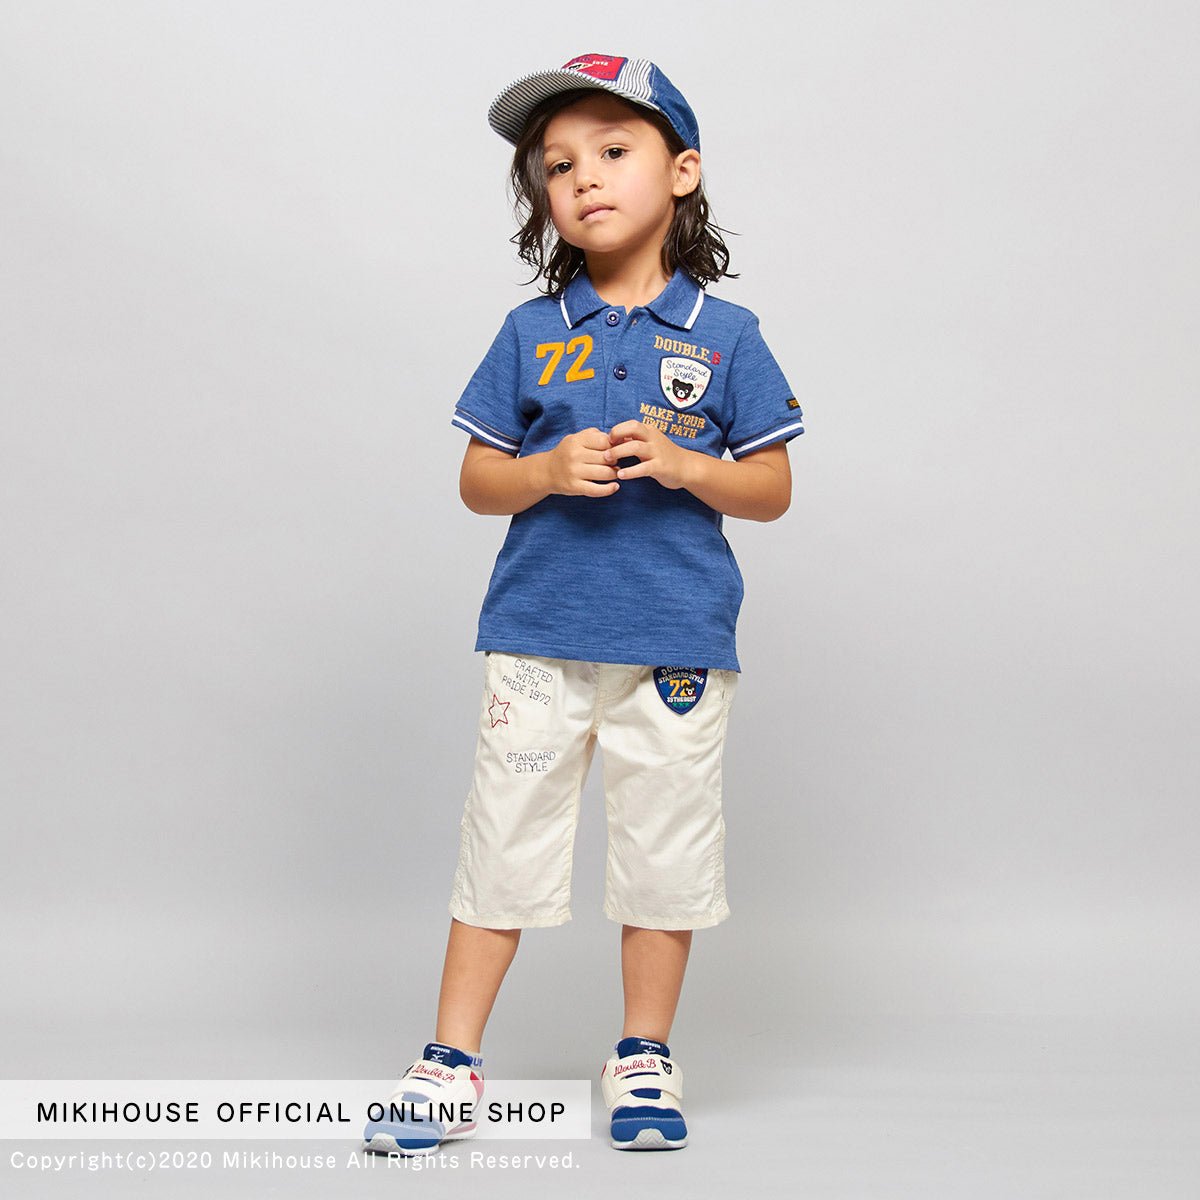 MIKI HOUSE & Mizuno Shoes for Kids - 61-9402-826-03-16